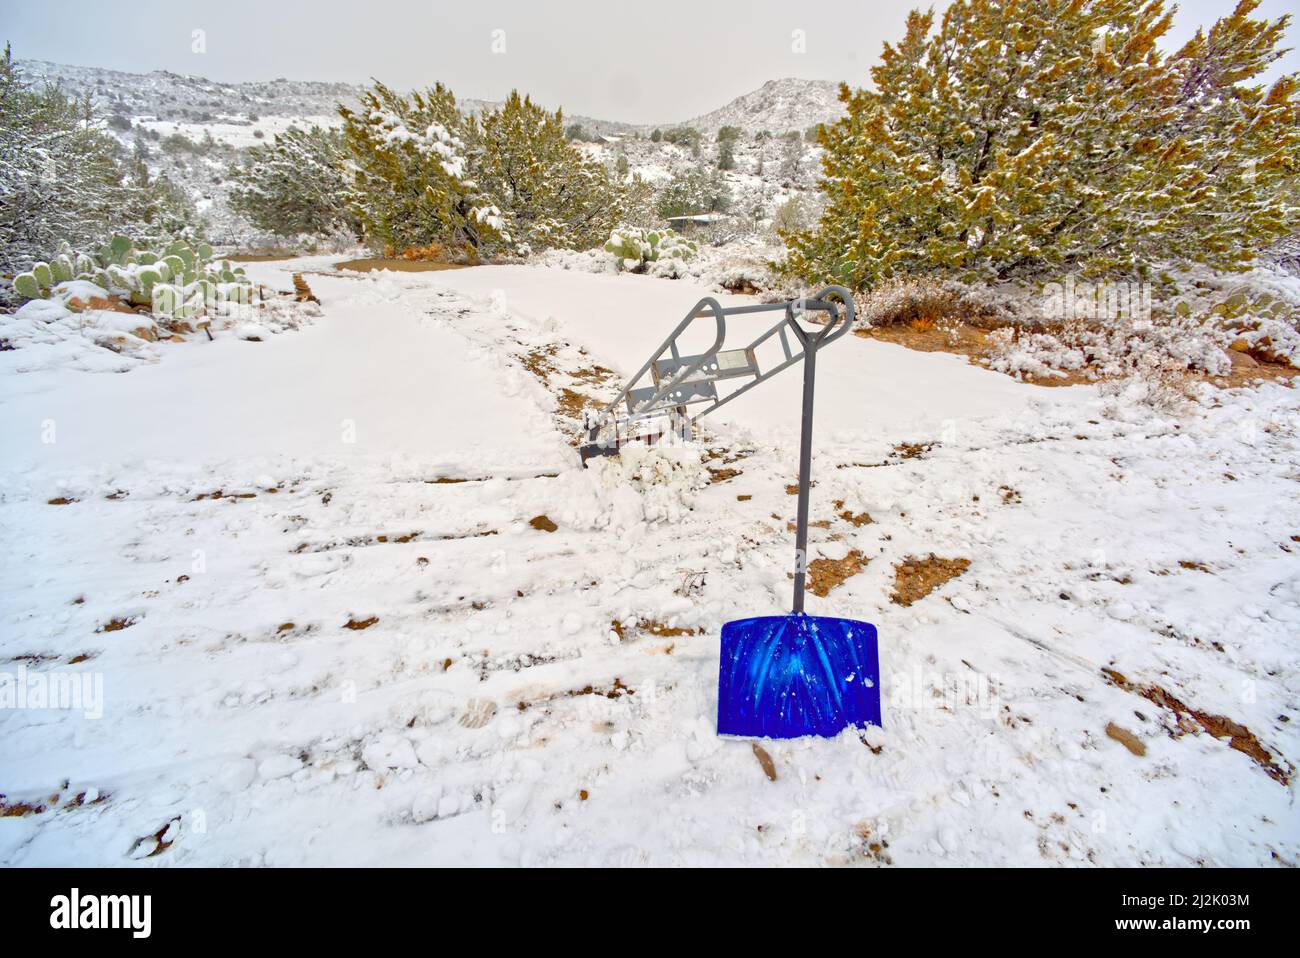 Tas d'appareils et pelle dans la neige, Chino Valley, Arizona, États-Unis Banque D'Images